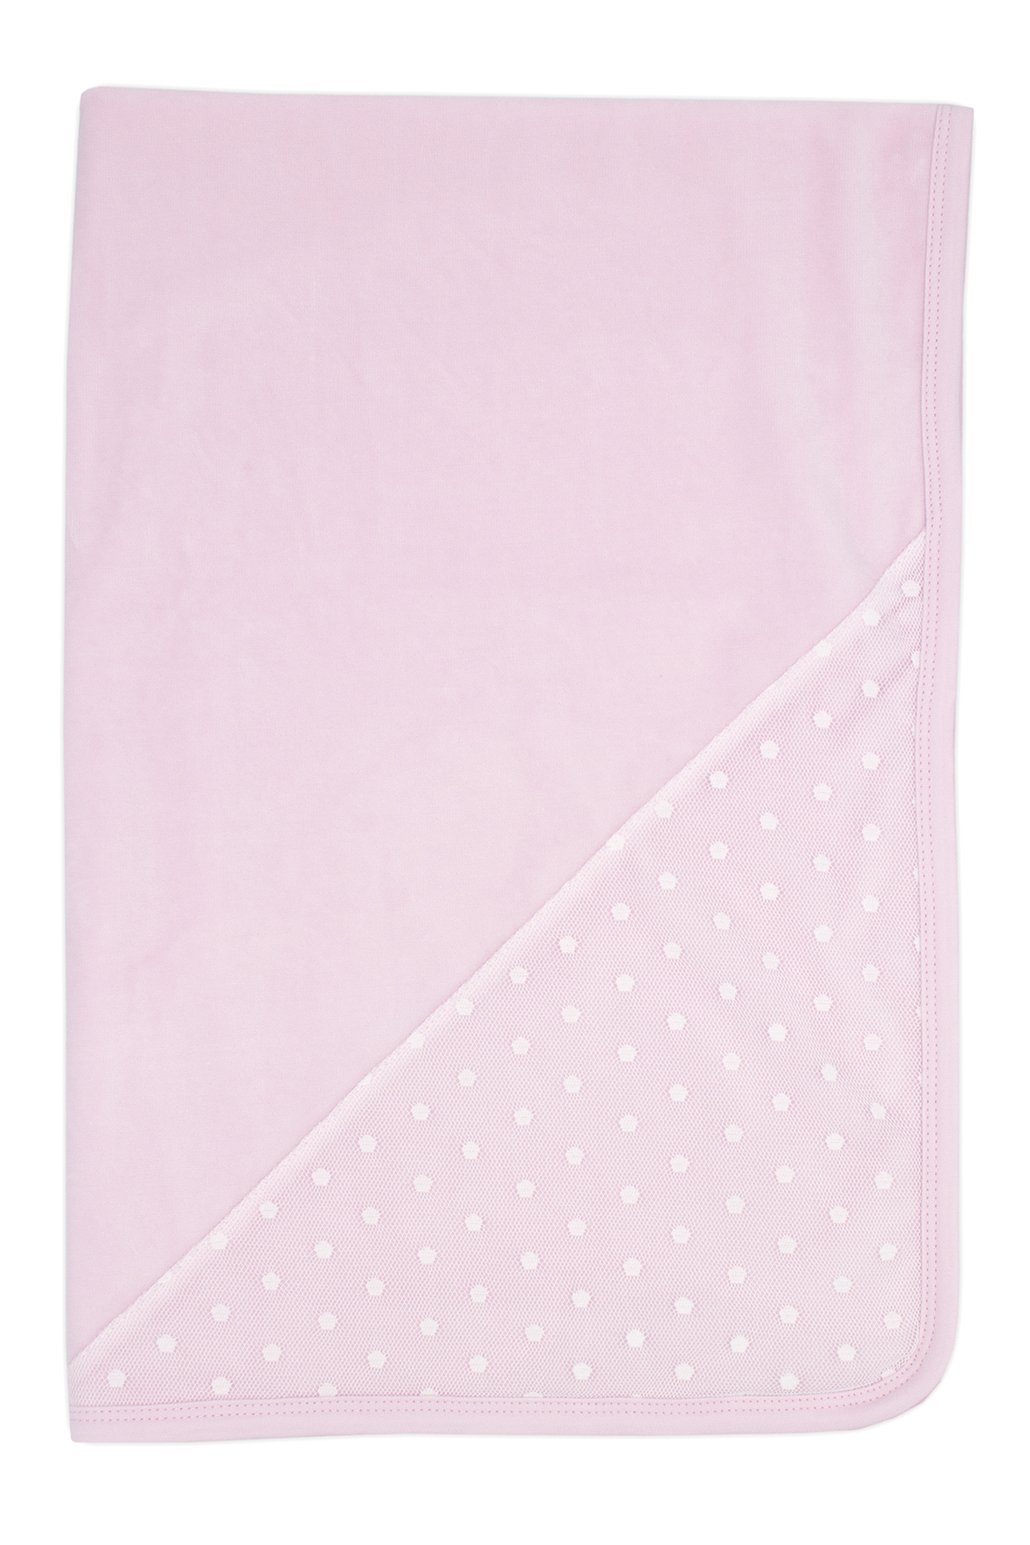 Rapife Pink Velour Polka Dot Blanket | Millie and John